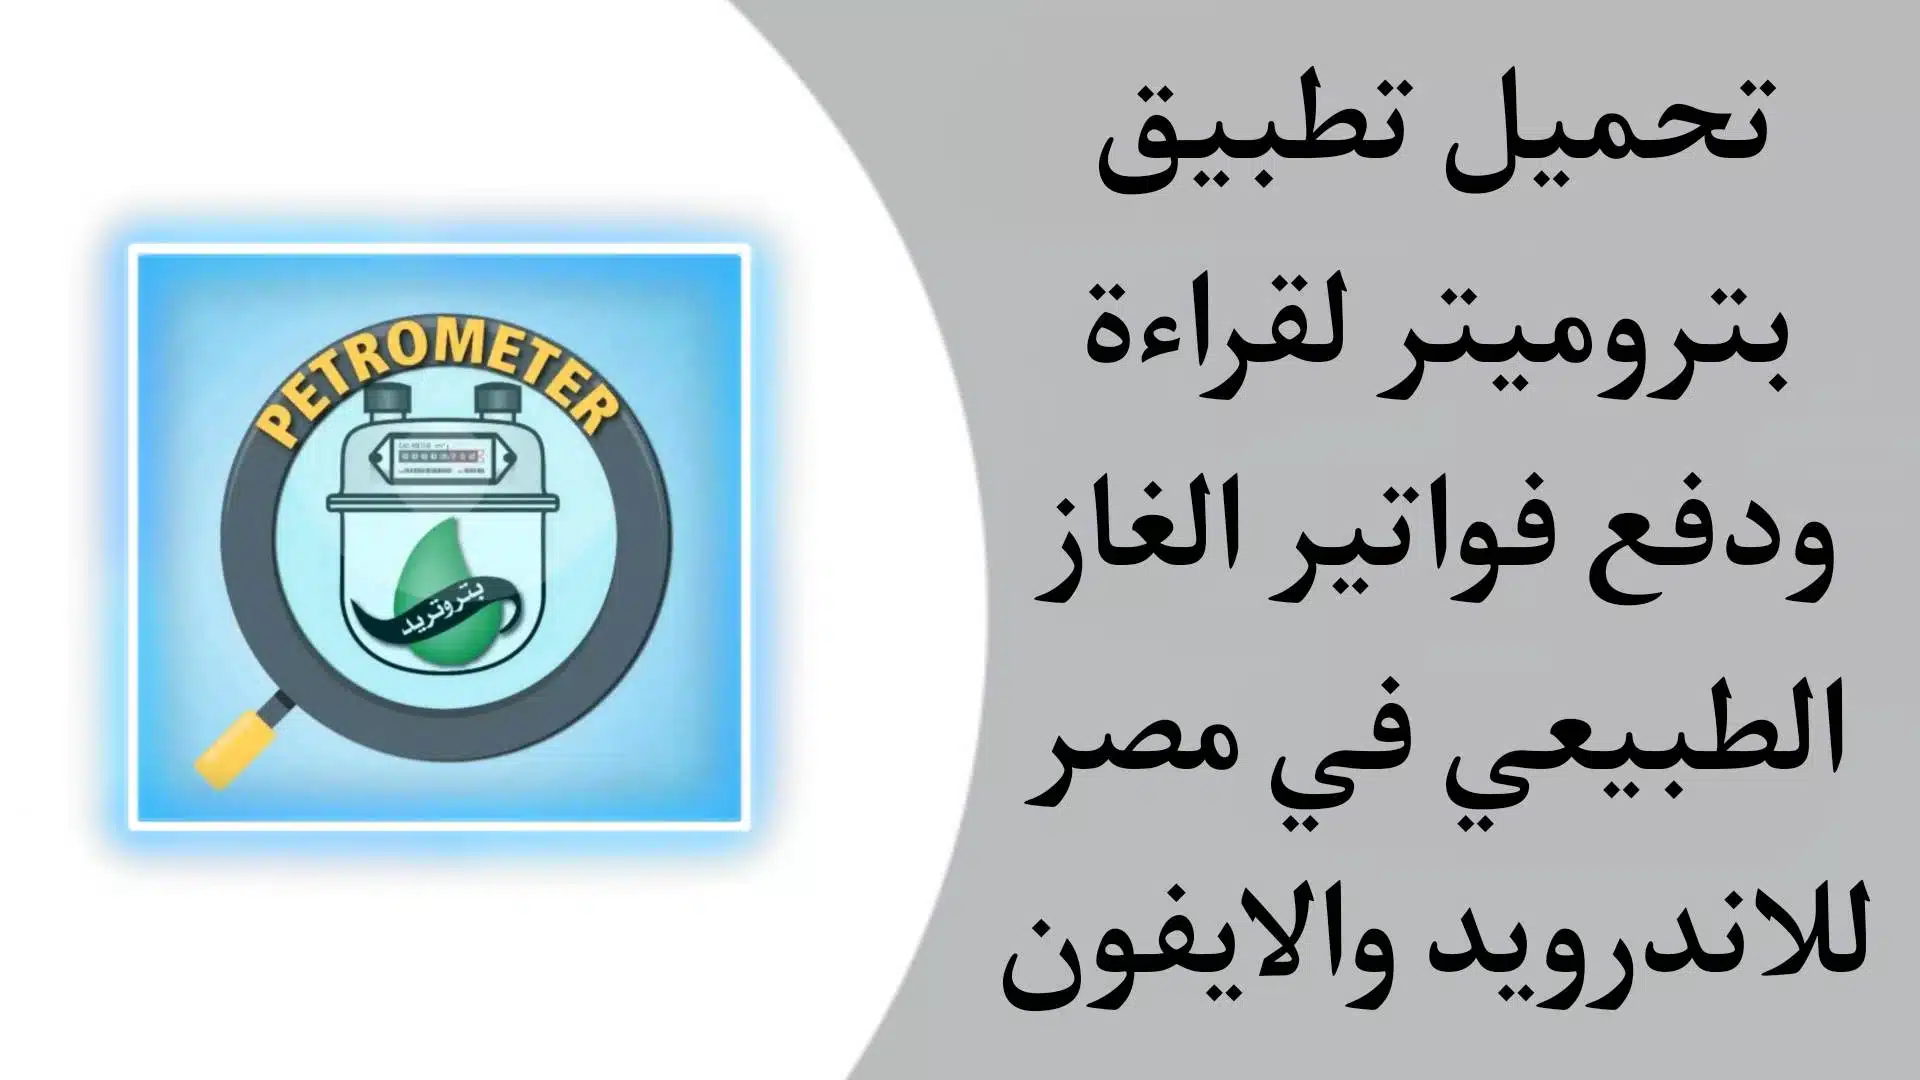 تحميل تطبيق بتروميتر لقراءة ودفع فواتير الغاز الطبيعي في مصر